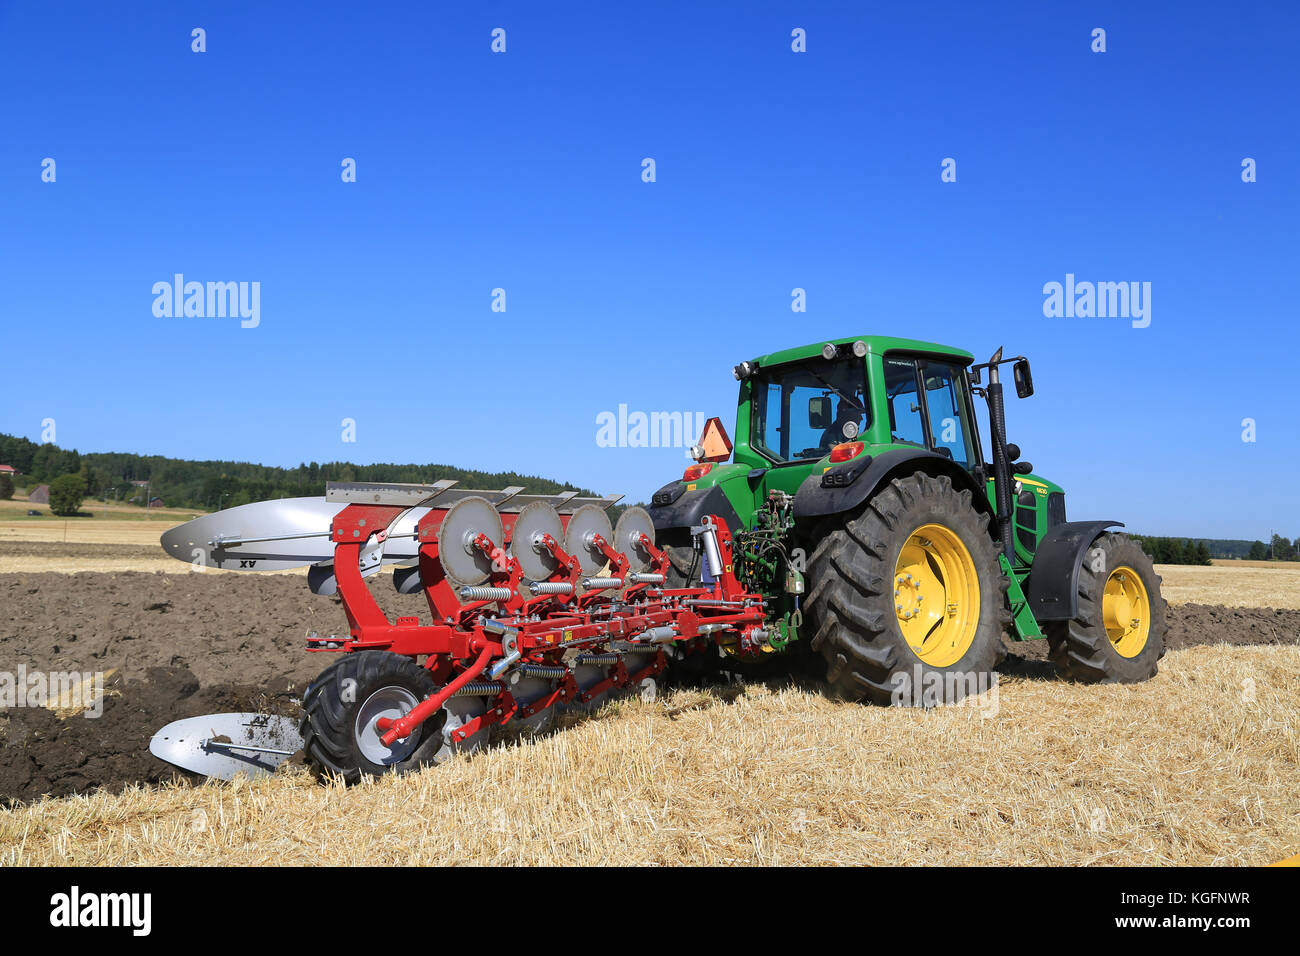 Salo, Finnland - 22. August 2015: unbenannte Landwirt betreibt John Deere 6630 Traktor und agrolux auf Feld bei puontin peltopaivat landwirtschaftliche Ernte Pflug Stockfoto